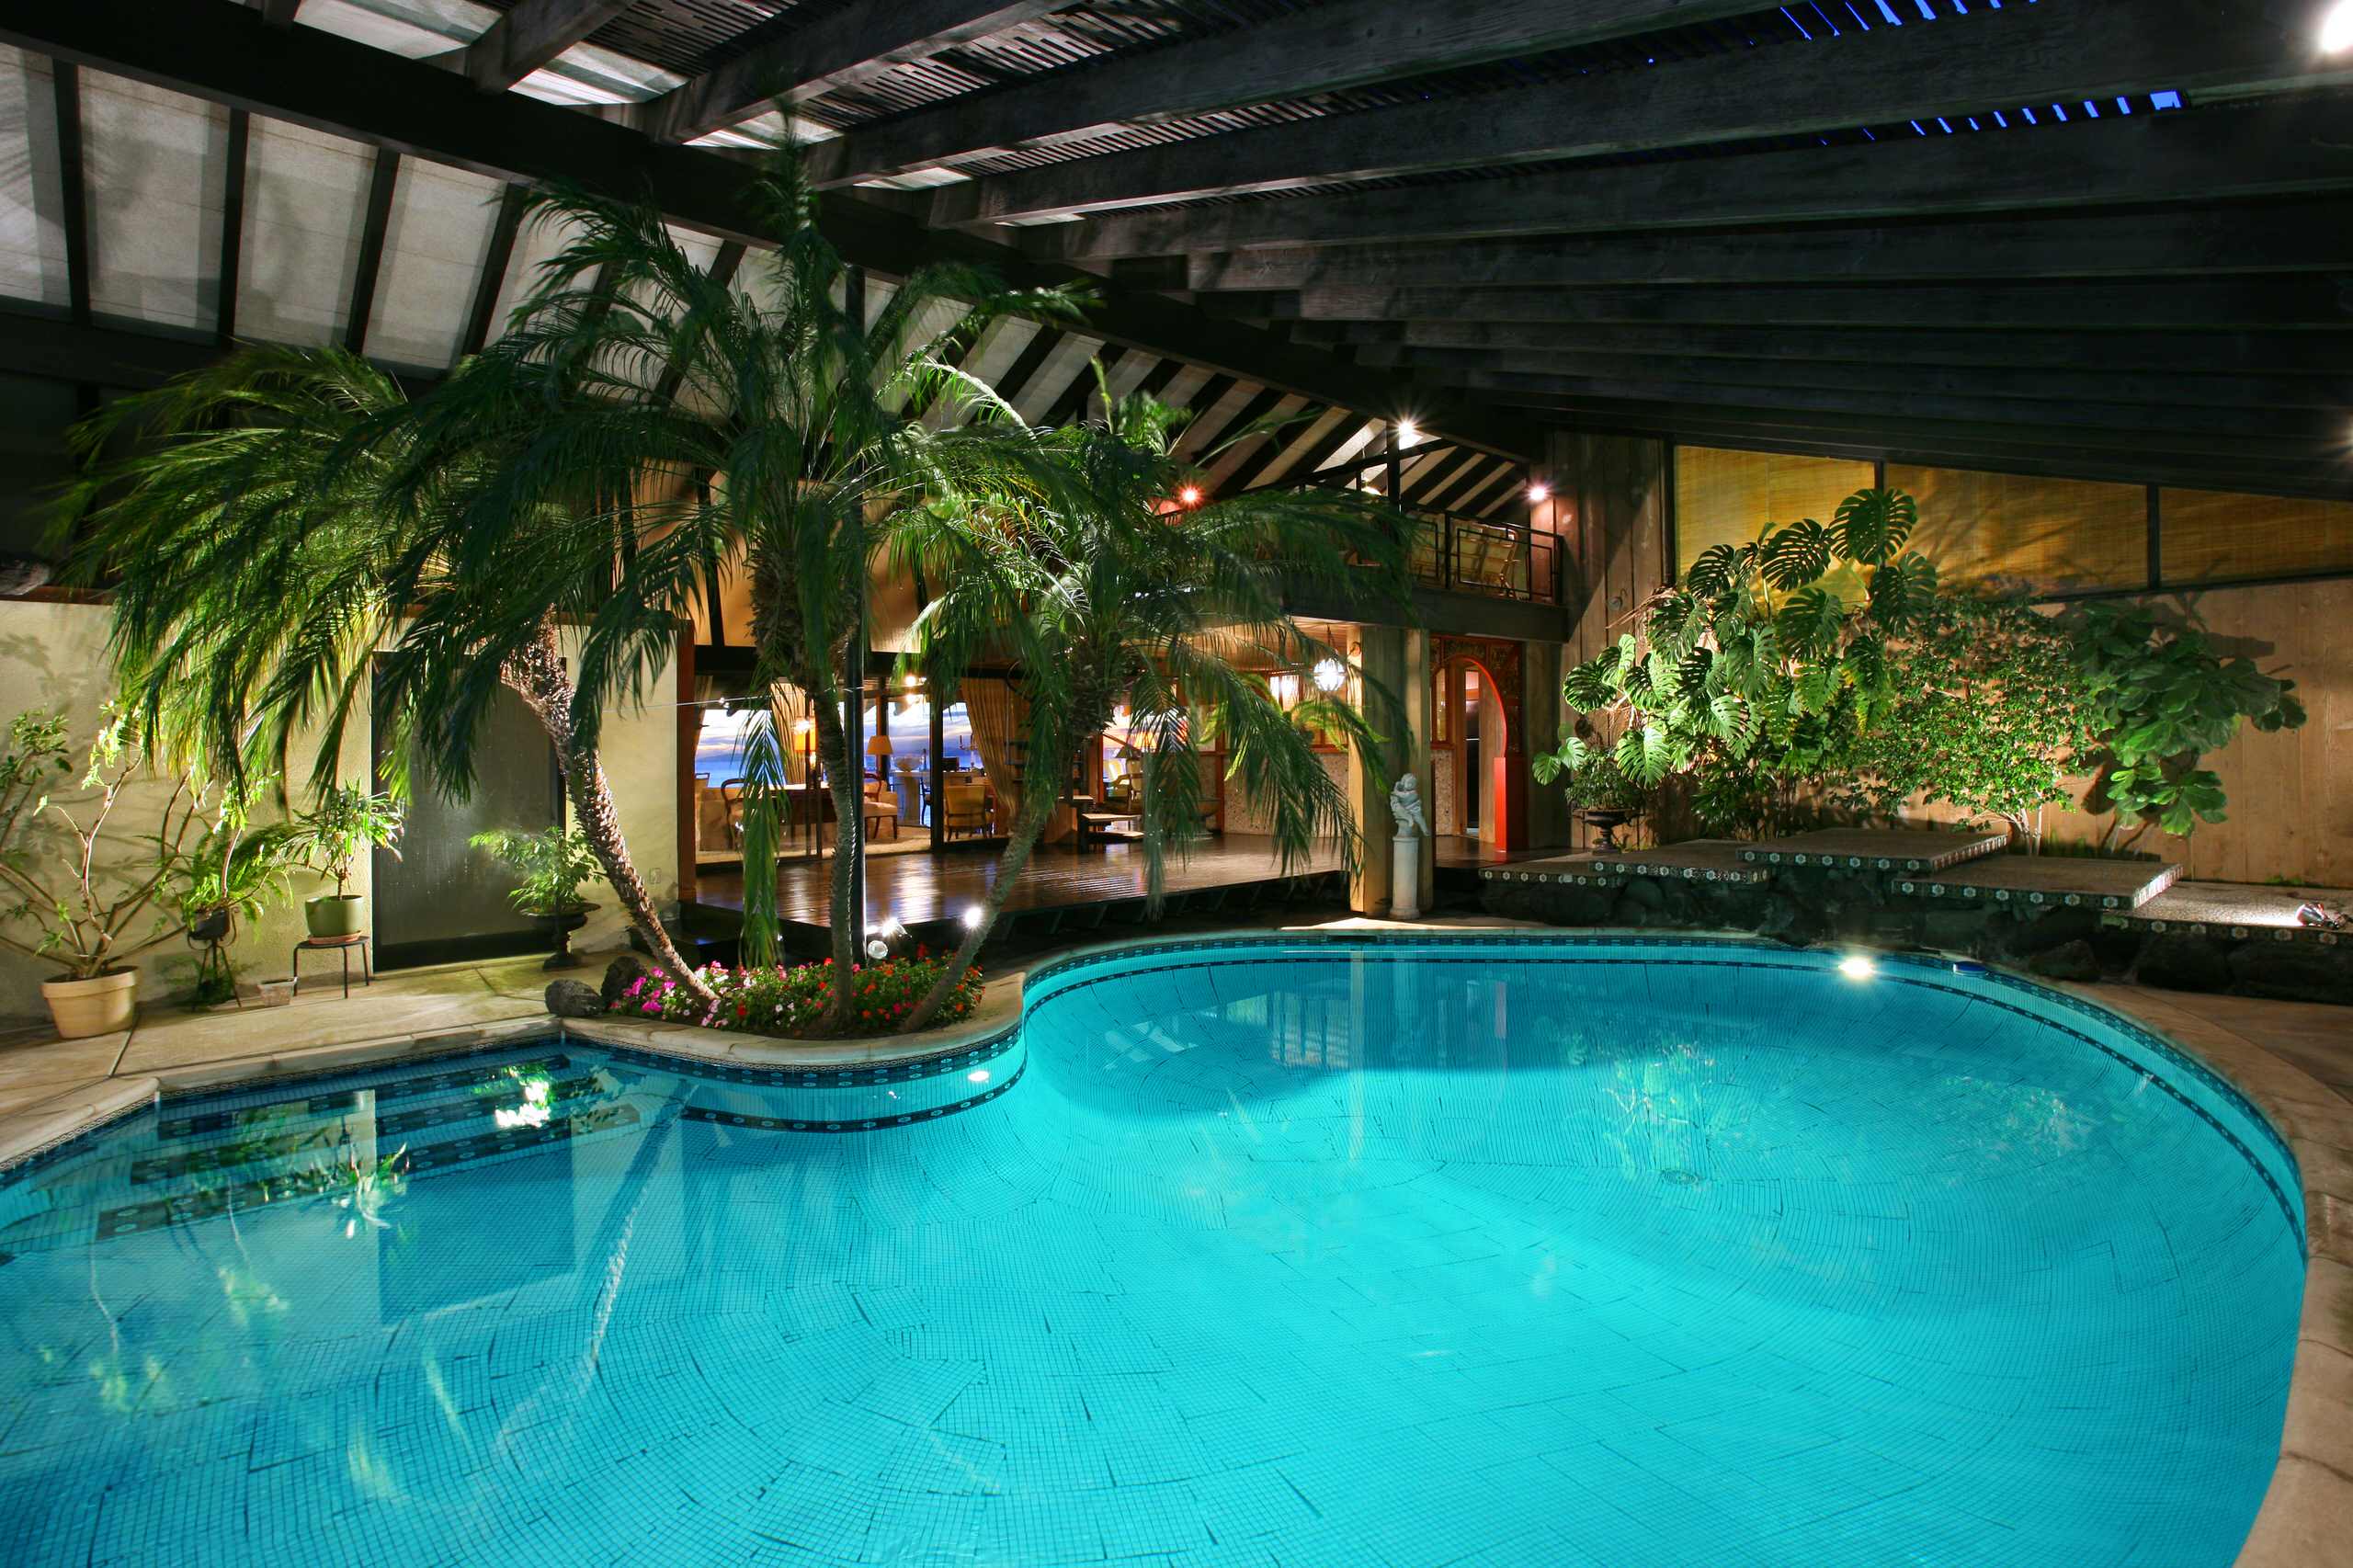 Садик с бассейном. Красивый бассейн. Зимний сад с бассейном. Красивый бассейн в доме. Бассейн в тропическом стиле.